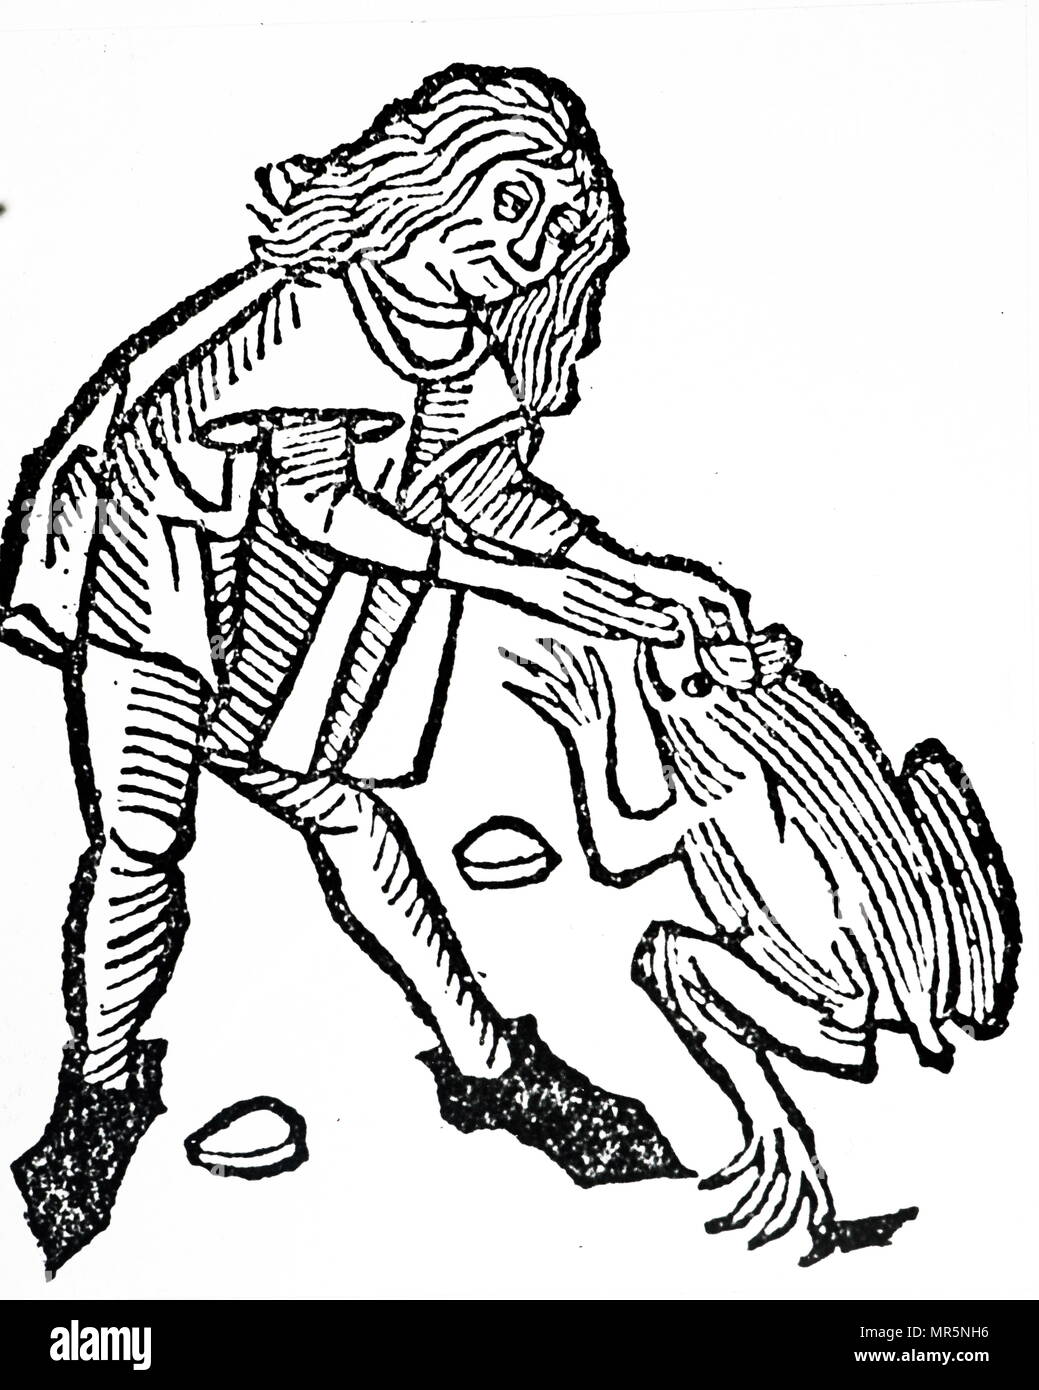 Gravure sur bois représentant l'extraction d'une pierre précieuse que l'on croit exister dans la tête d'un crapaud. En date du 15e siècle Banque D'Images